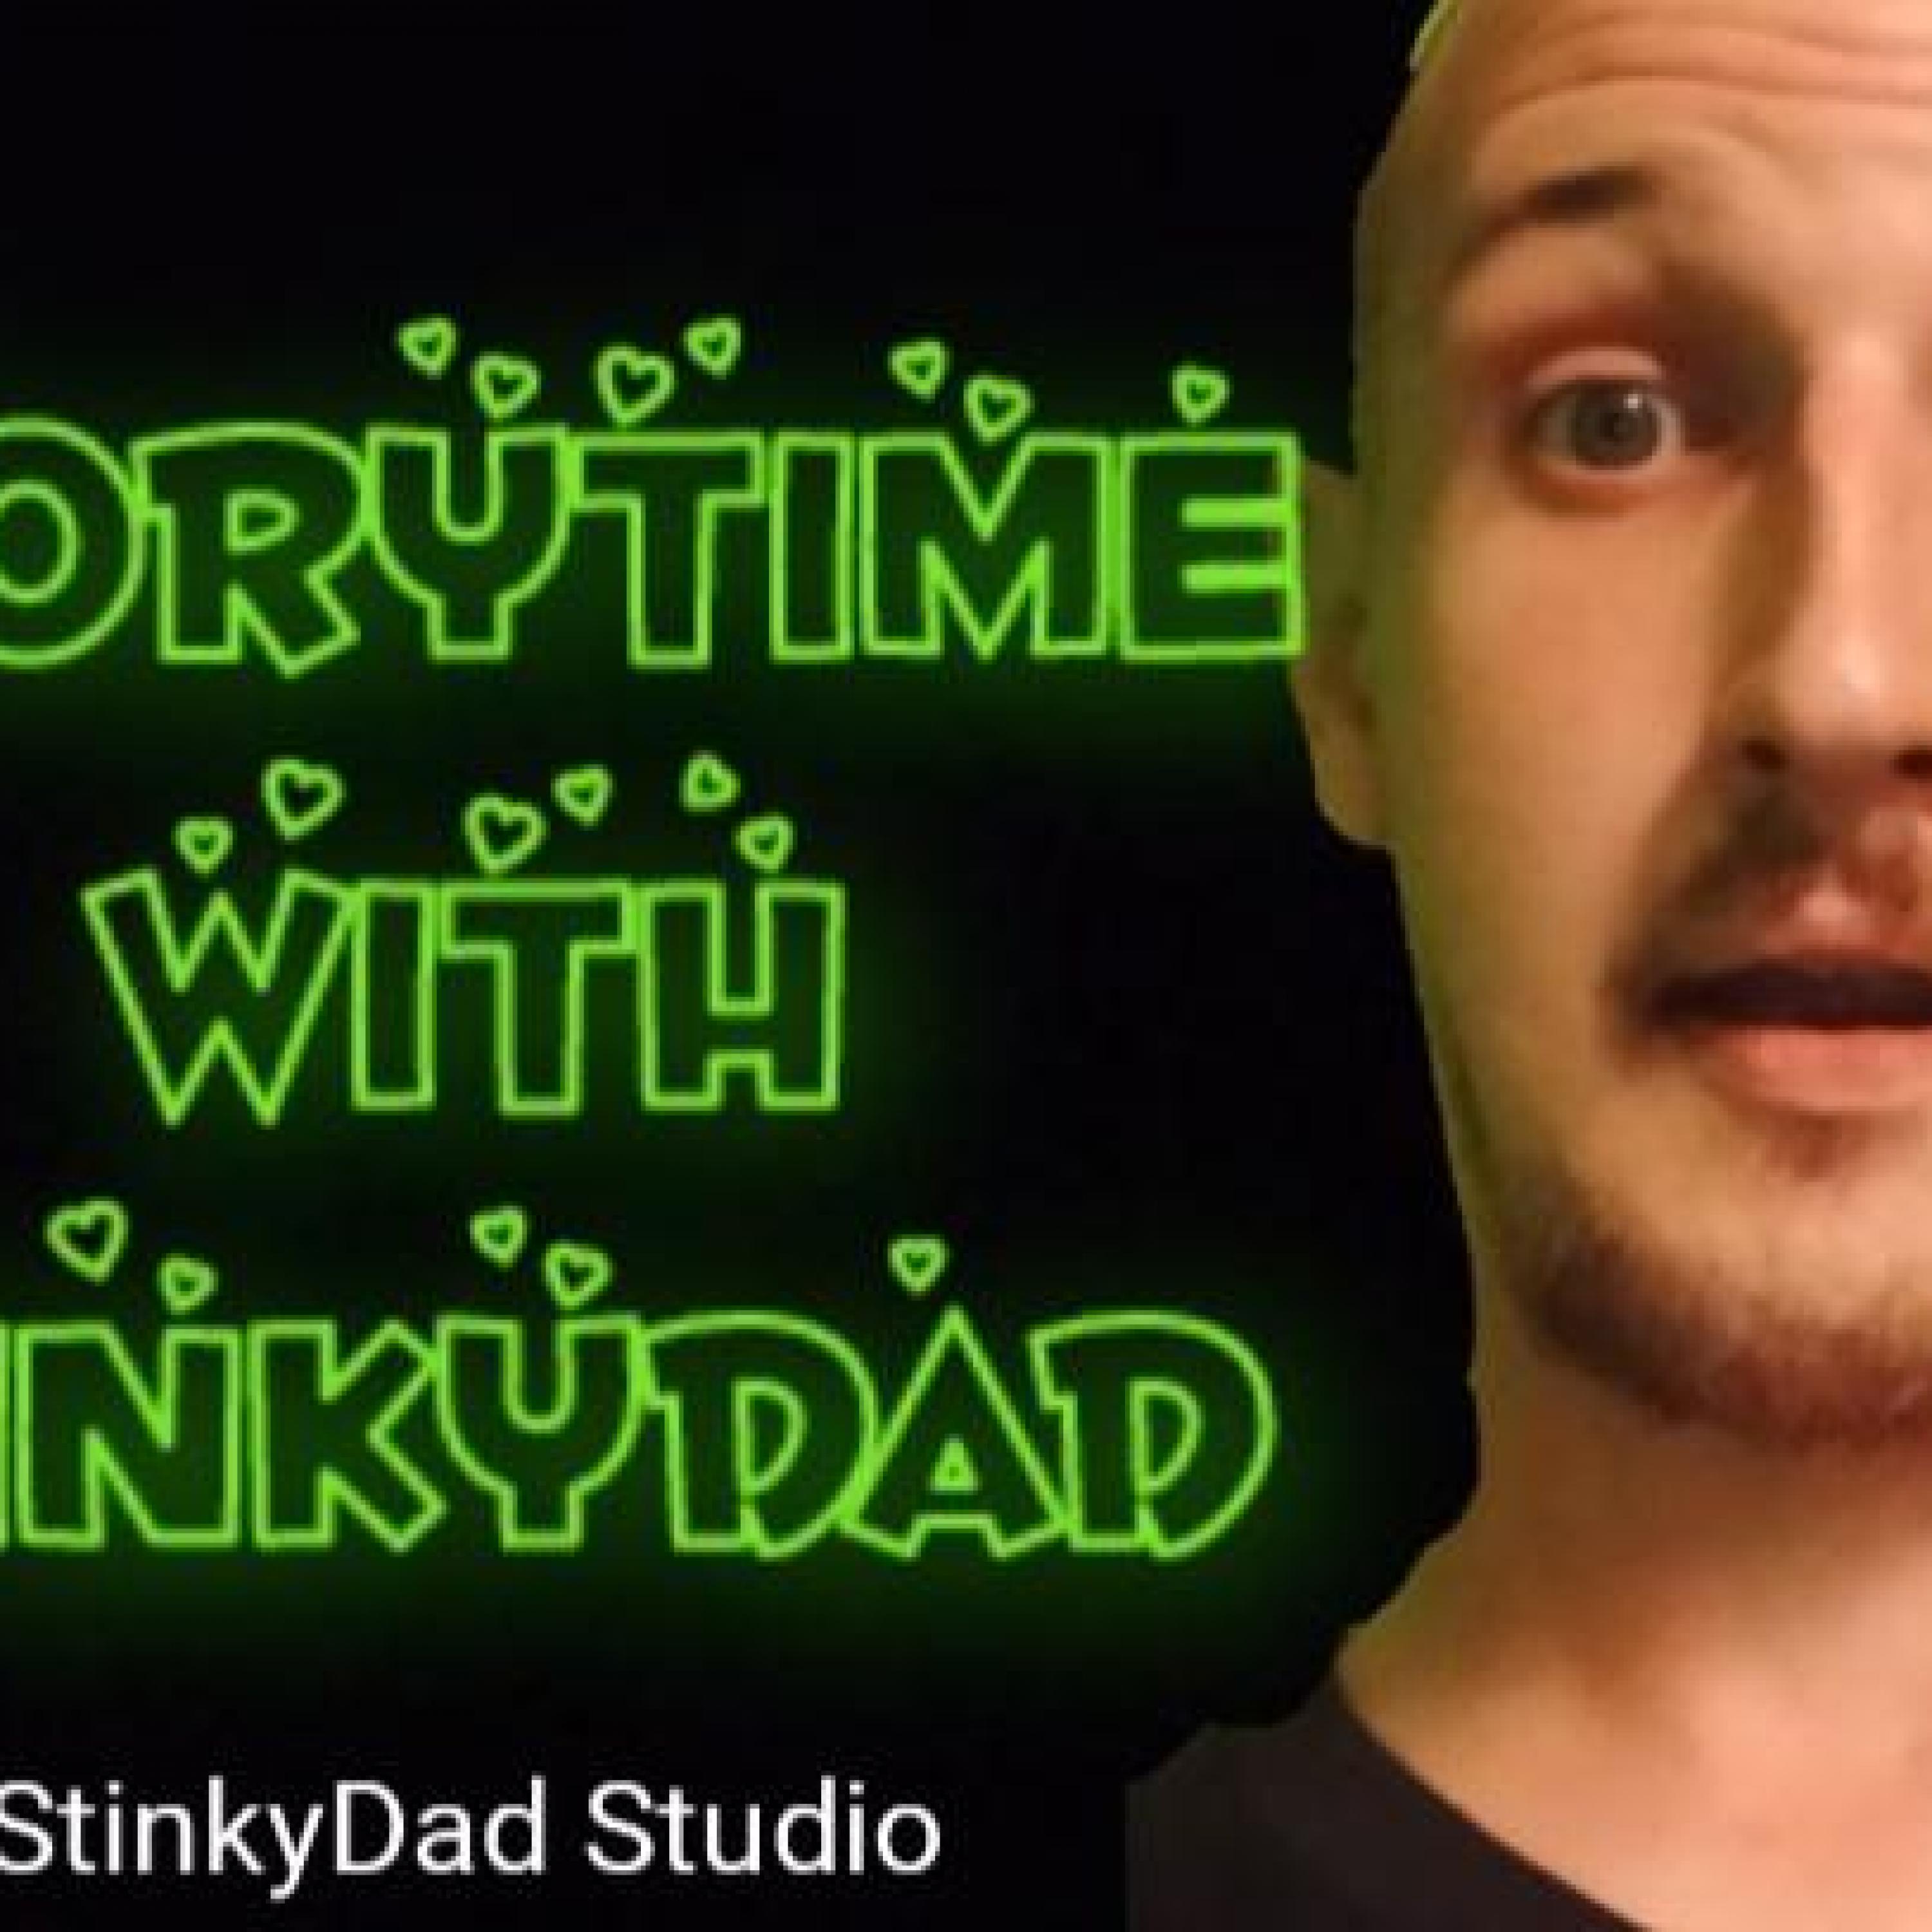 Storytime with StinkyDad